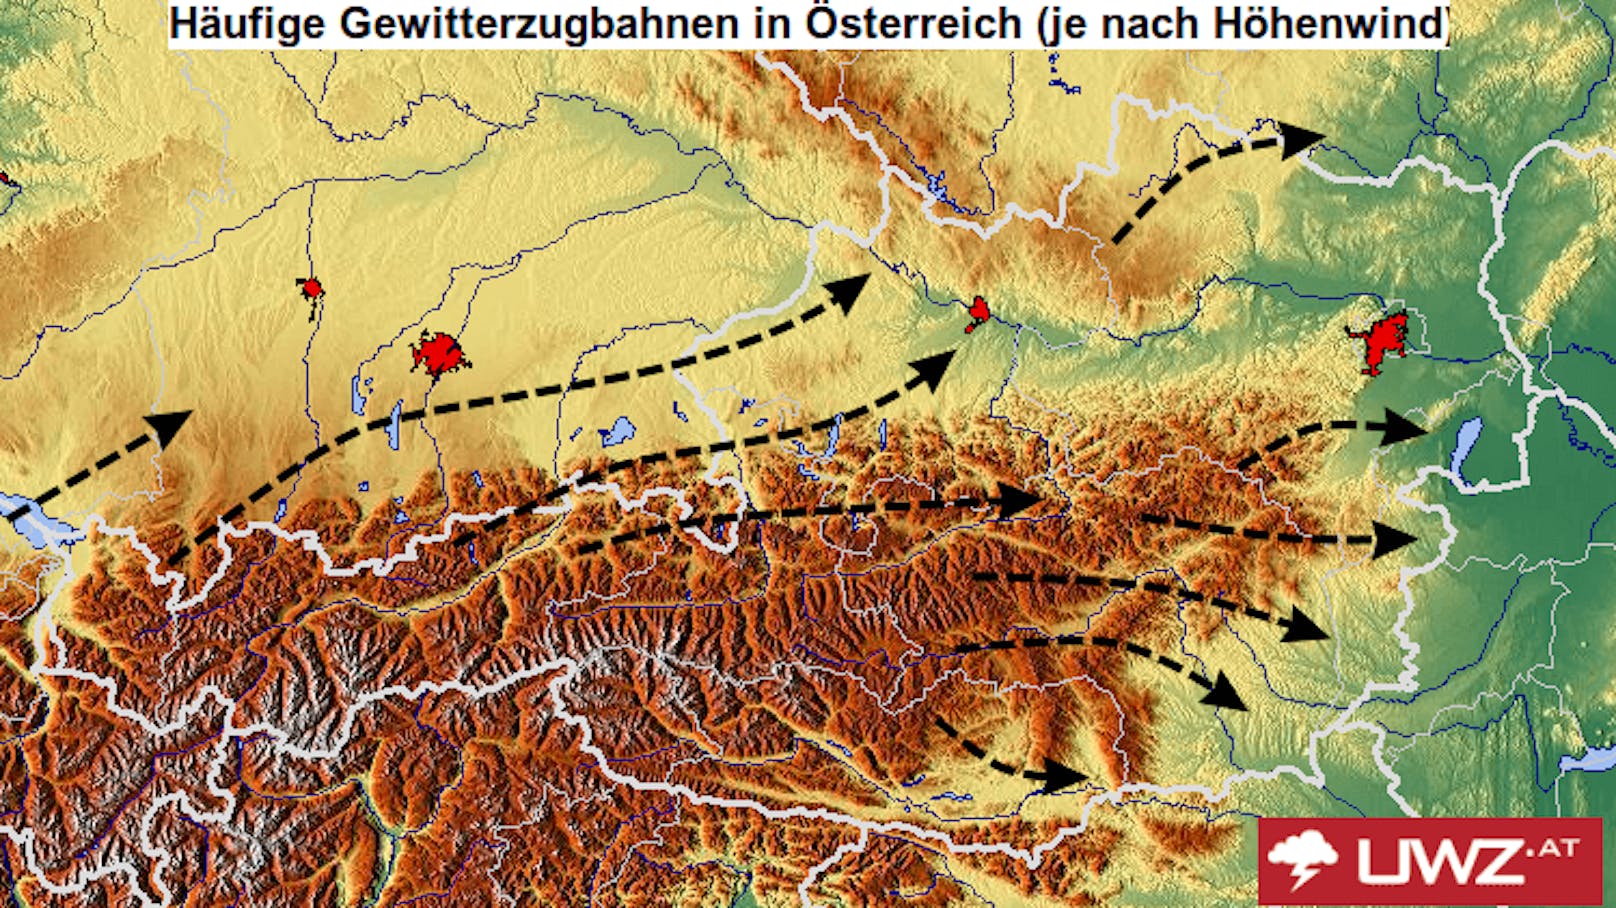 Typische Gewitterzugbahnen in Österreich. Bei Südwest- bis Westlagen ist vor allem die Alpennordseite betroffen, bei West- oder Nordwestlagen dagegen eher der Süden bzw. Südosten.